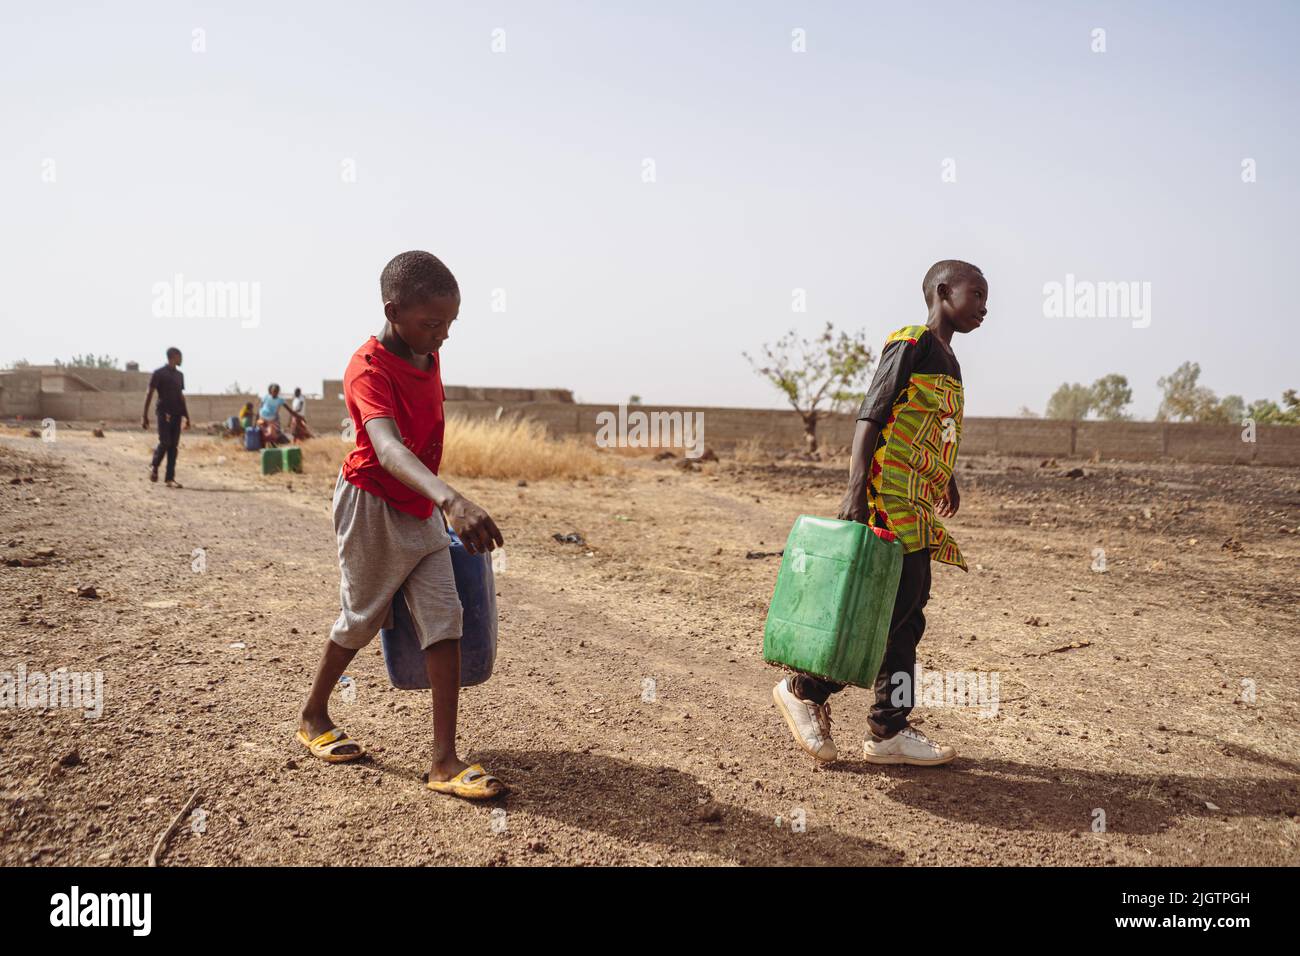 Des enfants africains qui ravivent de l'eau à la pompe d'un village; le manque de robinets et de main-d'œuvre enfantine dans les pays en développement Banque D'Images